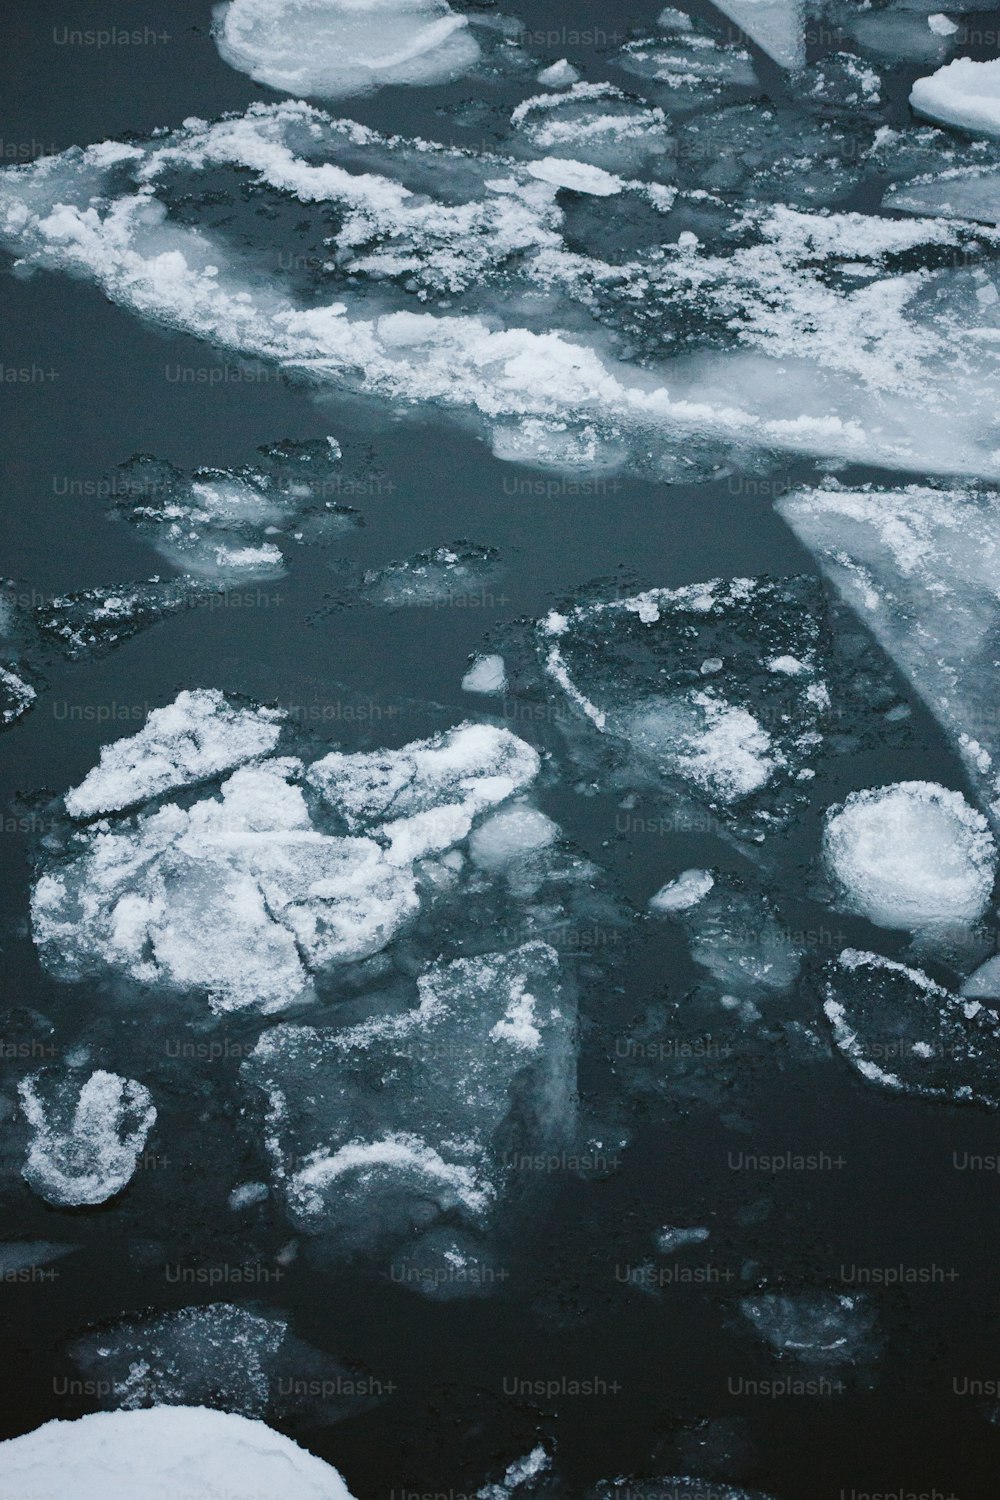 blocos de gelo flutuando em um corpo de água